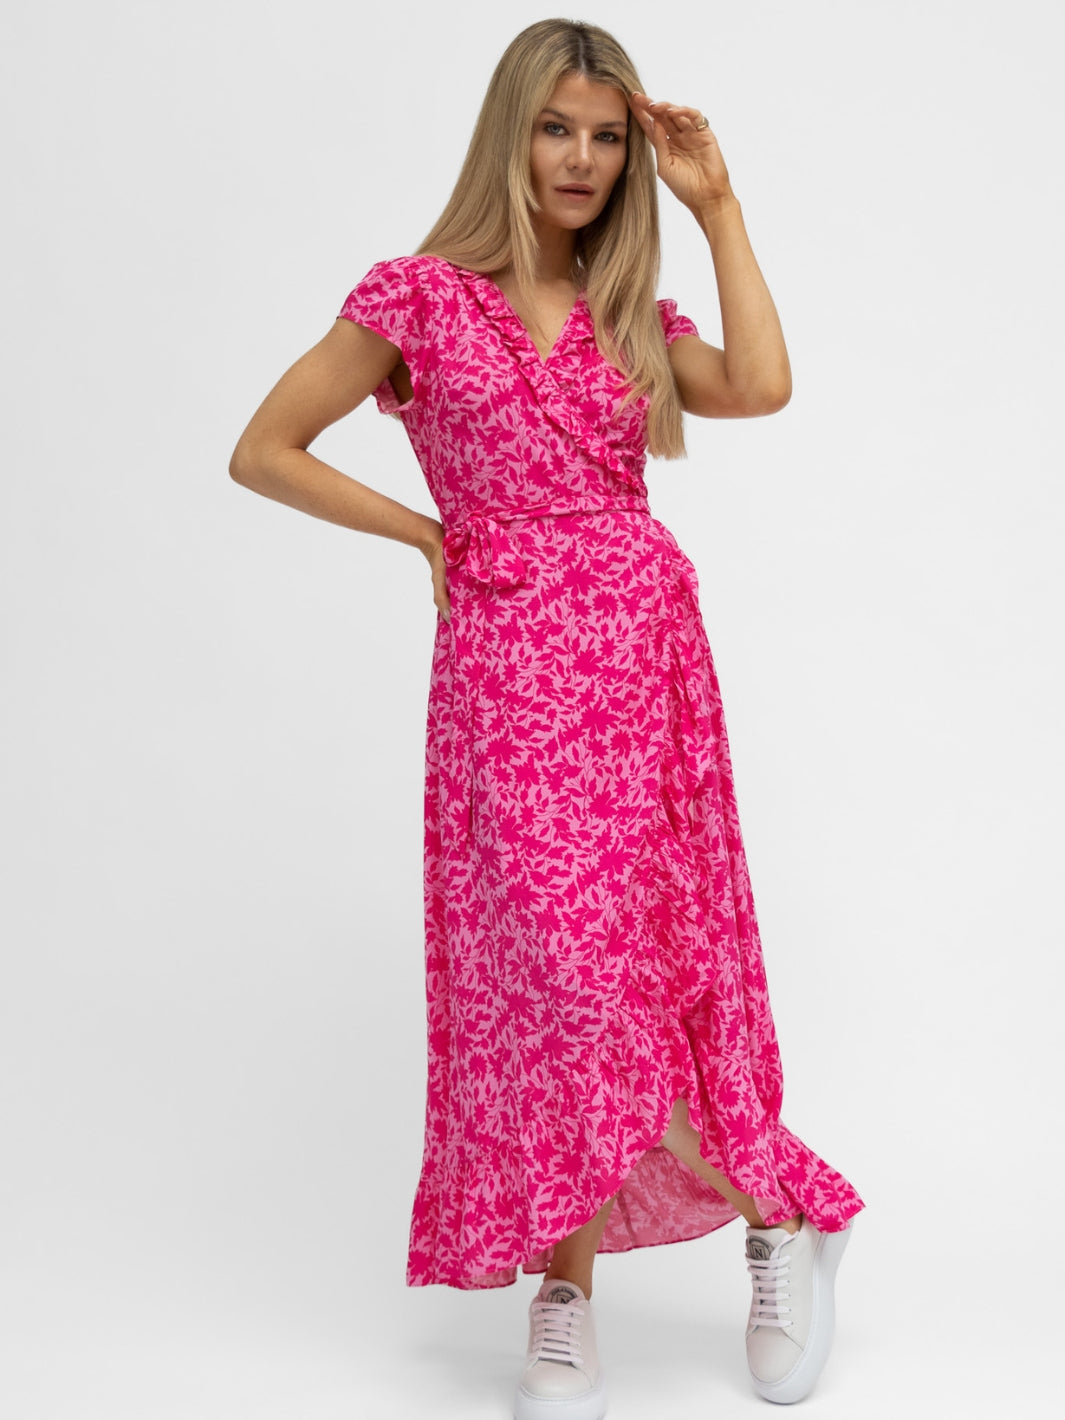 Aspiga London Dress Aspiga London Wrap Dress in Pink Celmatis Print